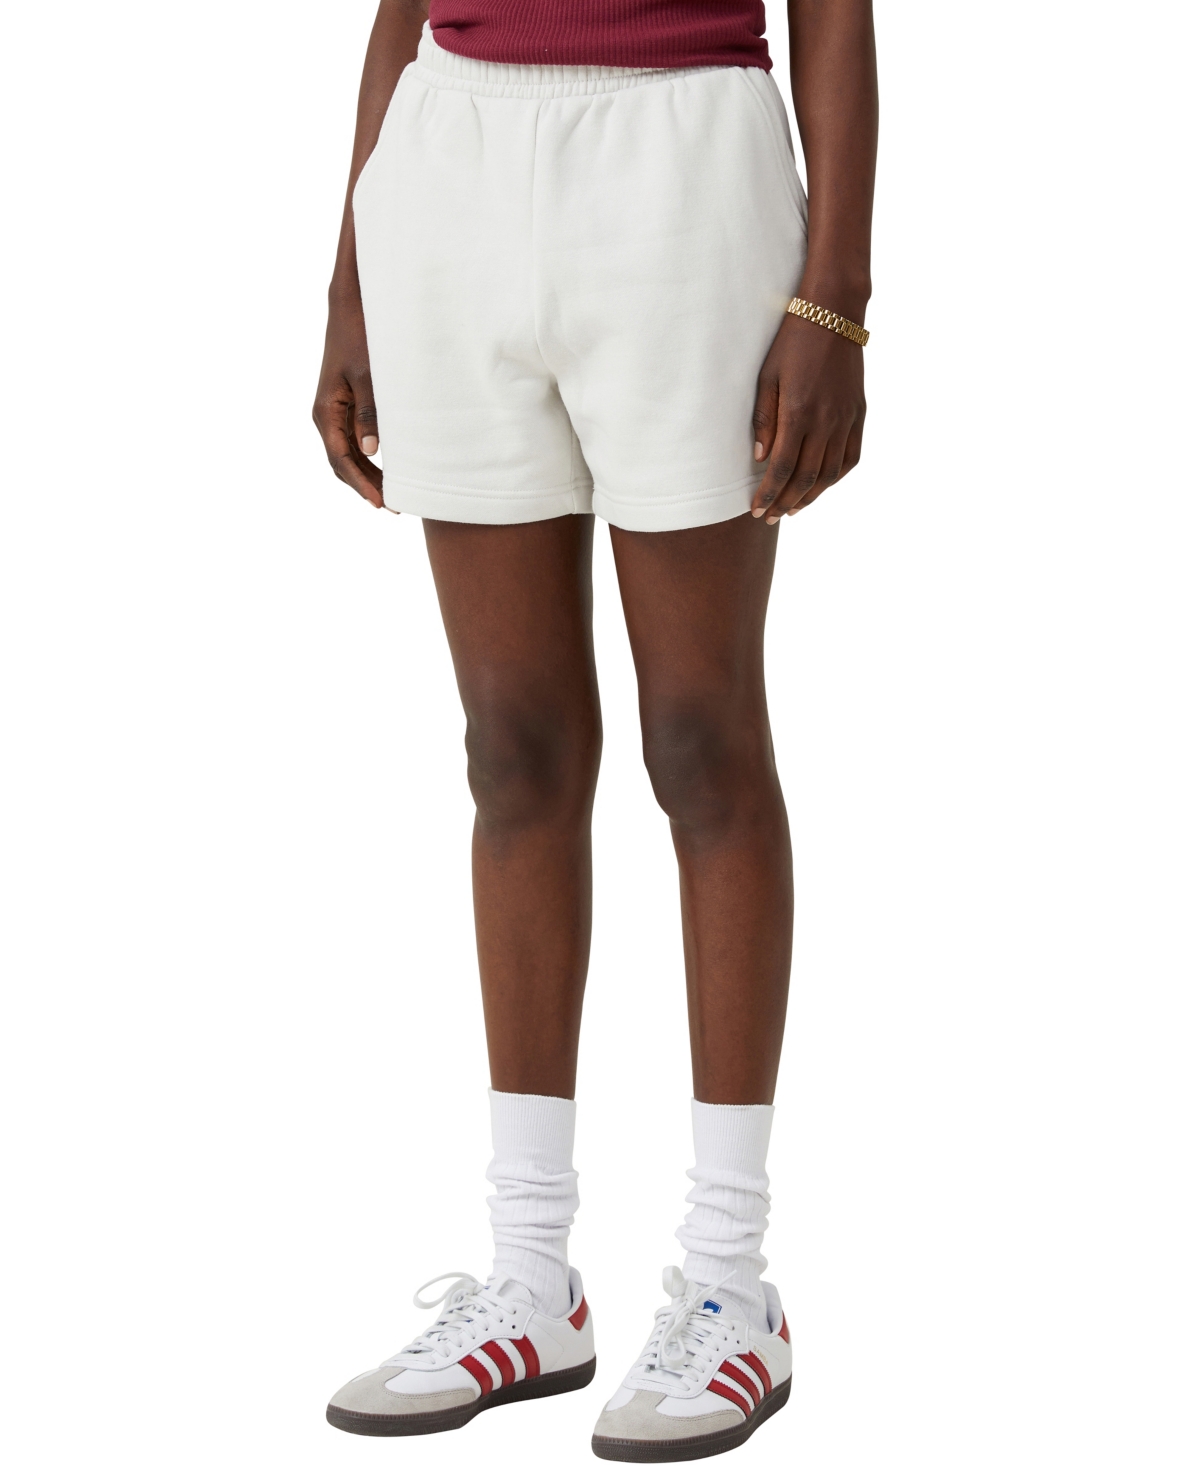 Women's Classic Fleece Shorts - White